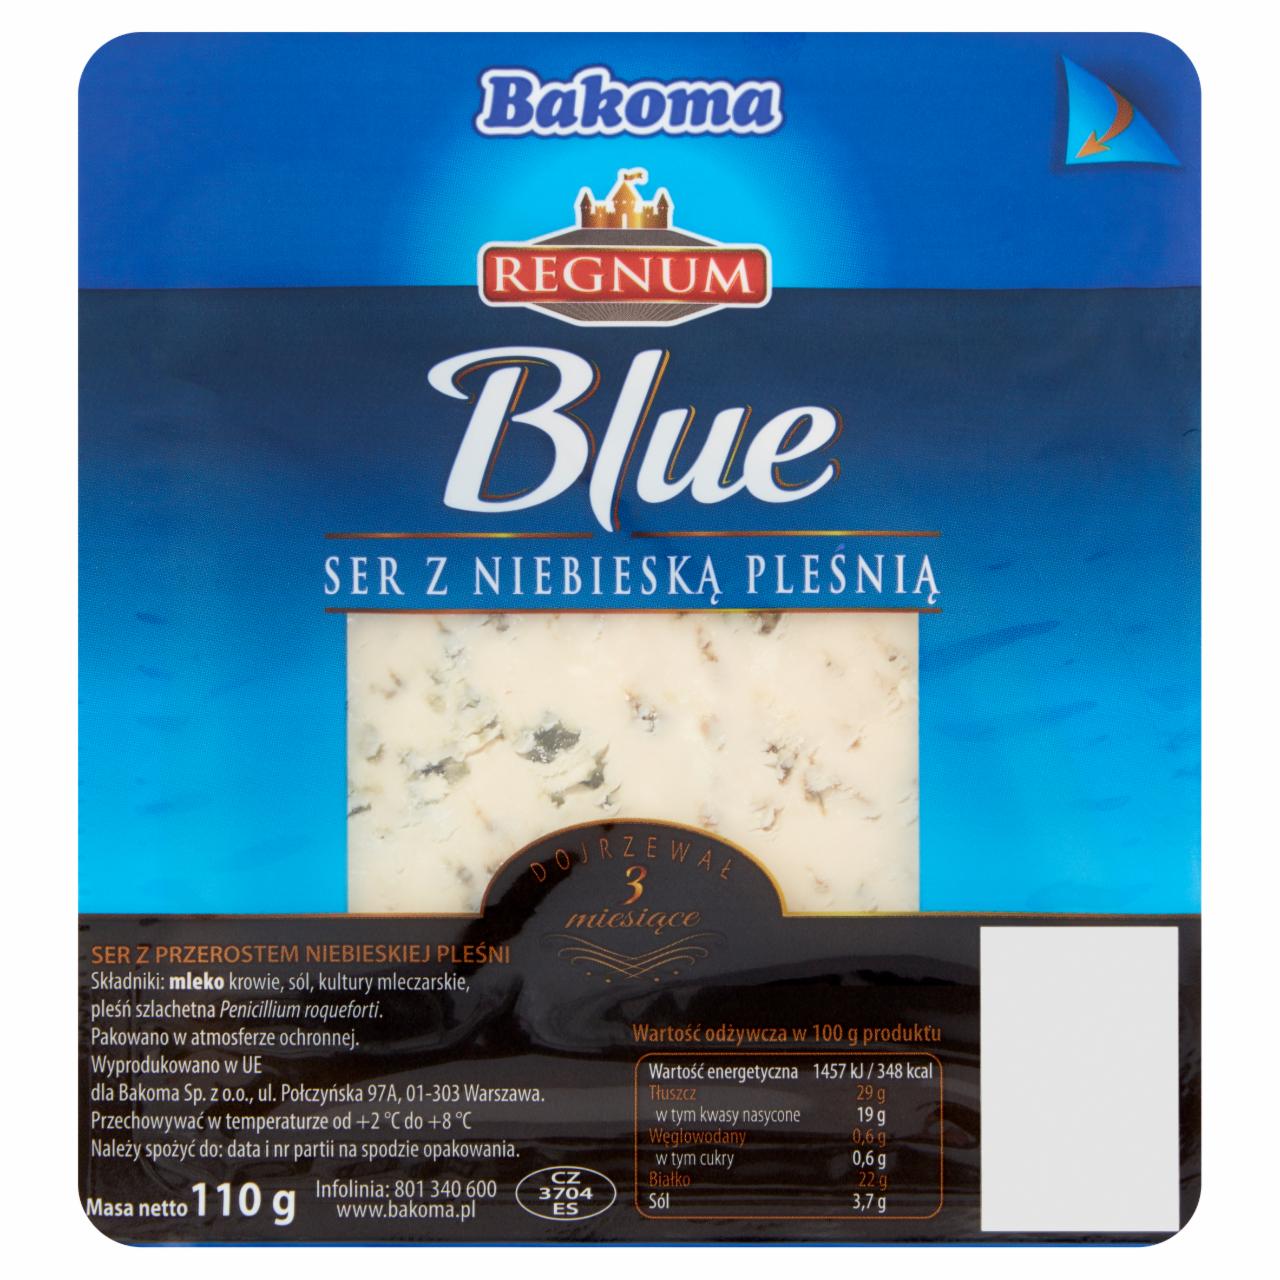 Zdjęcia - Bakoma Regnum Blue Ser z niebieską pleśnią 110 g